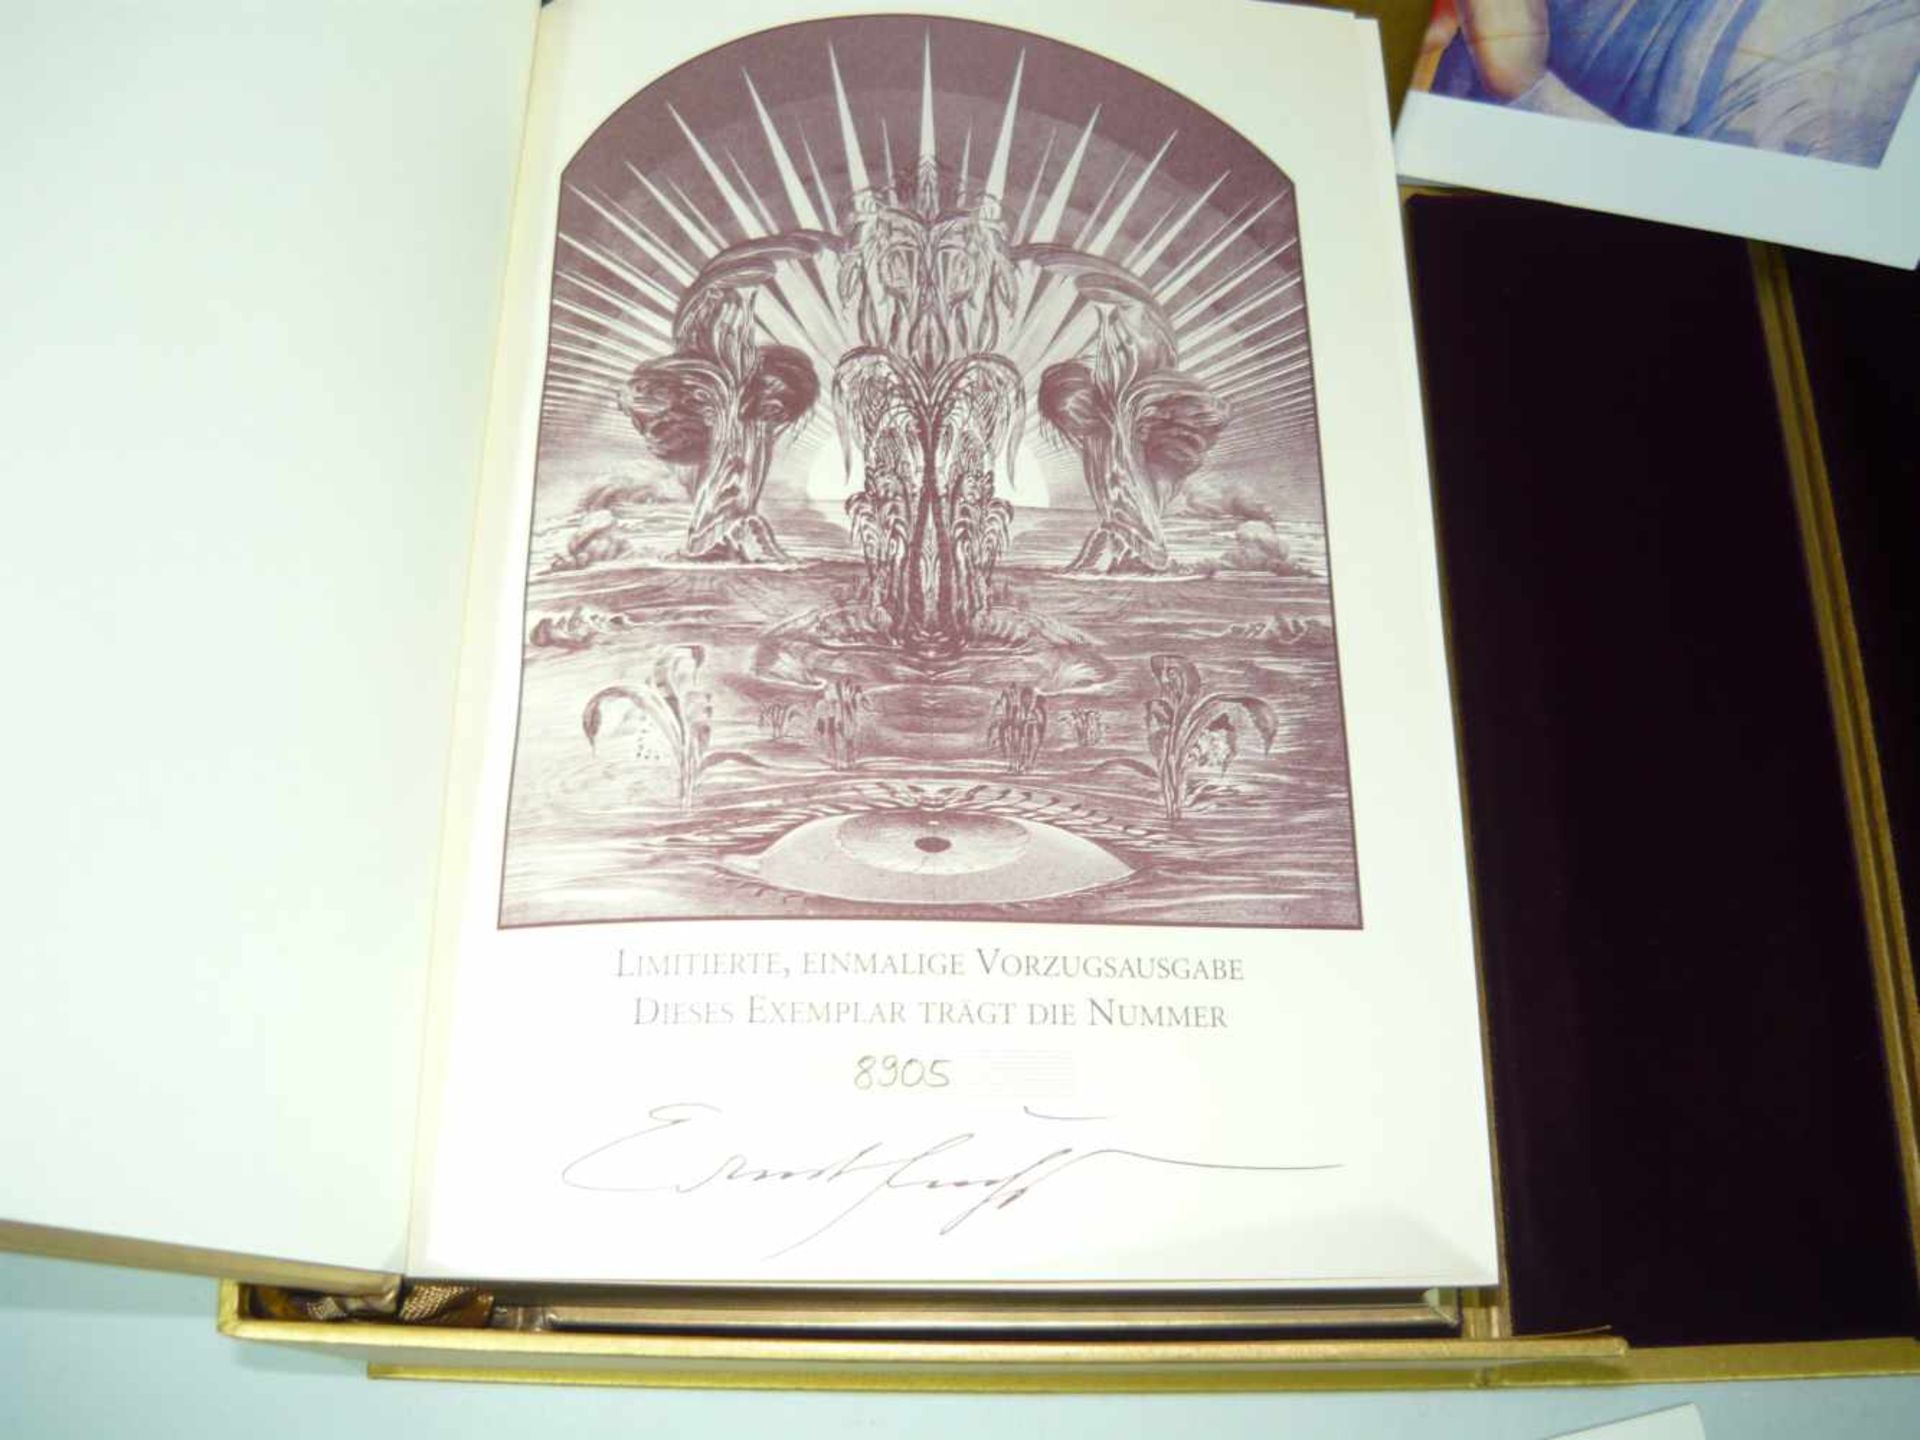 Ernst Fuchs Bibel in Kasette. Metalleinband mit Prägung. Nummeriert 8905. Kasette ca. 11x25x31 cm. - Bild 2 aus 2